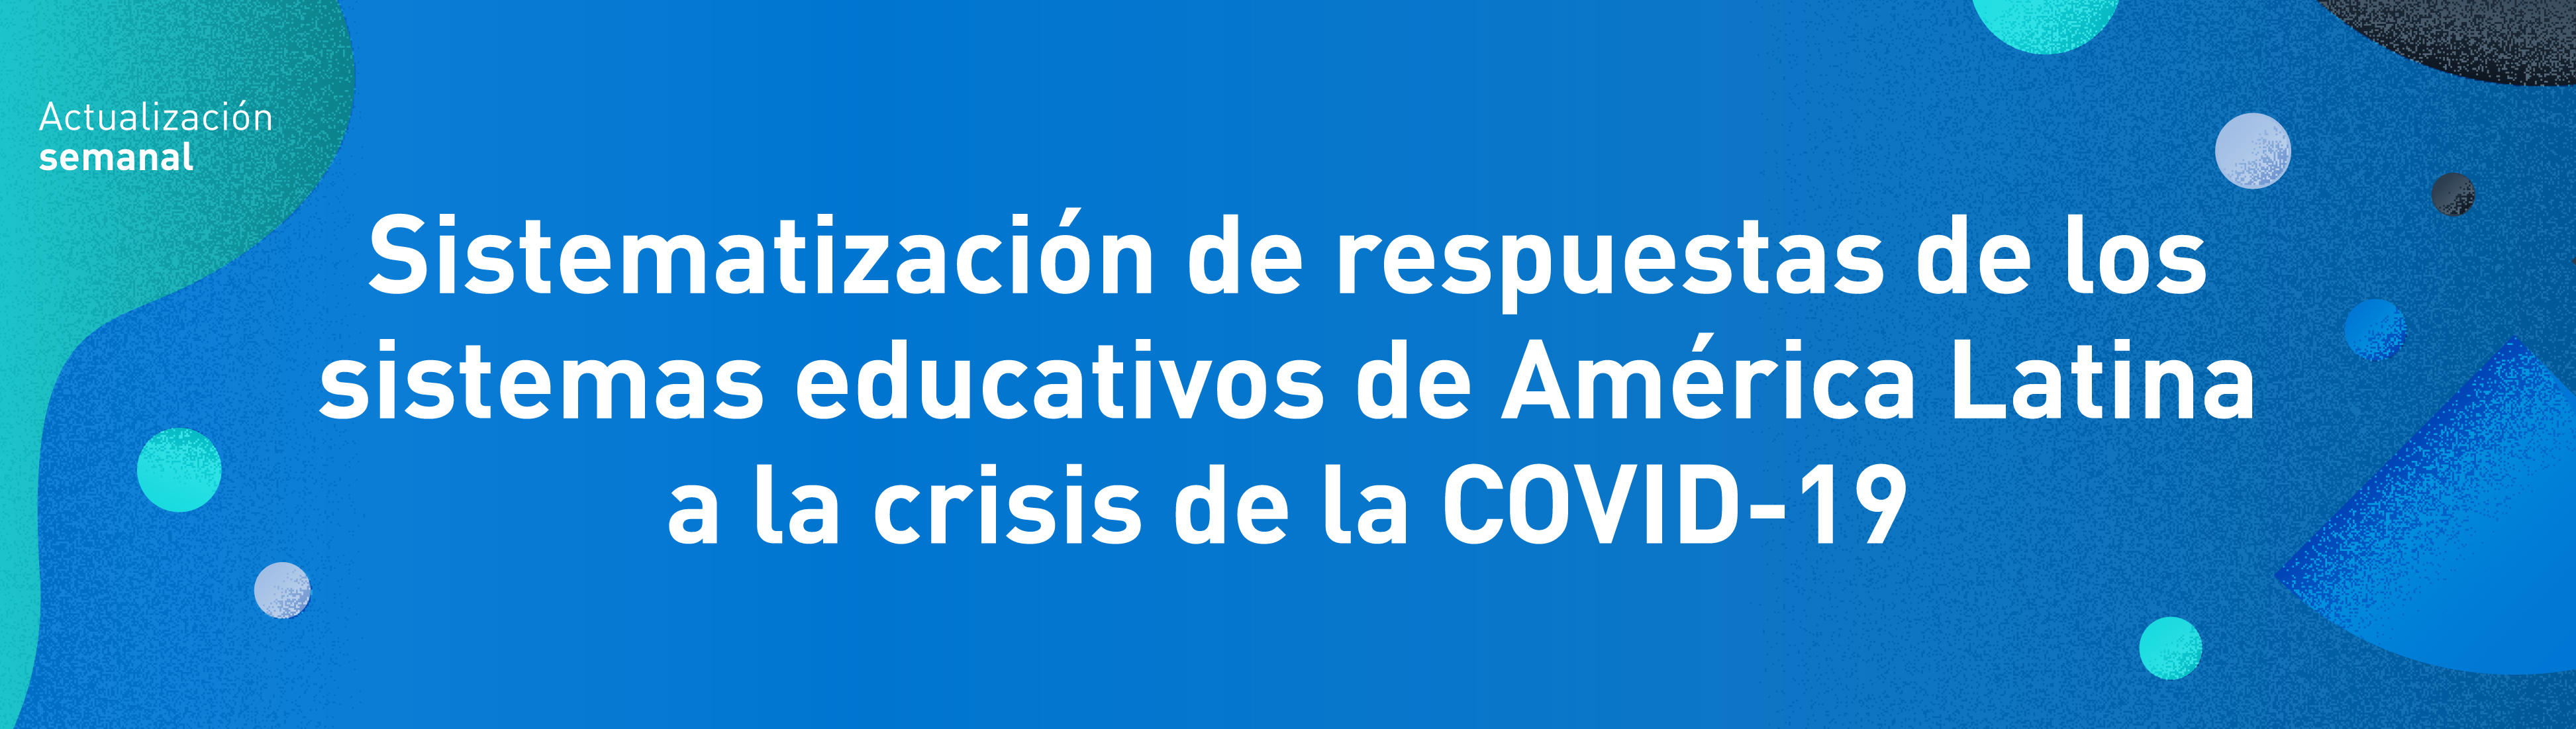 Sistematización de respuestas de los sistemas educativos de América Latina a la crisis de la COVID-19